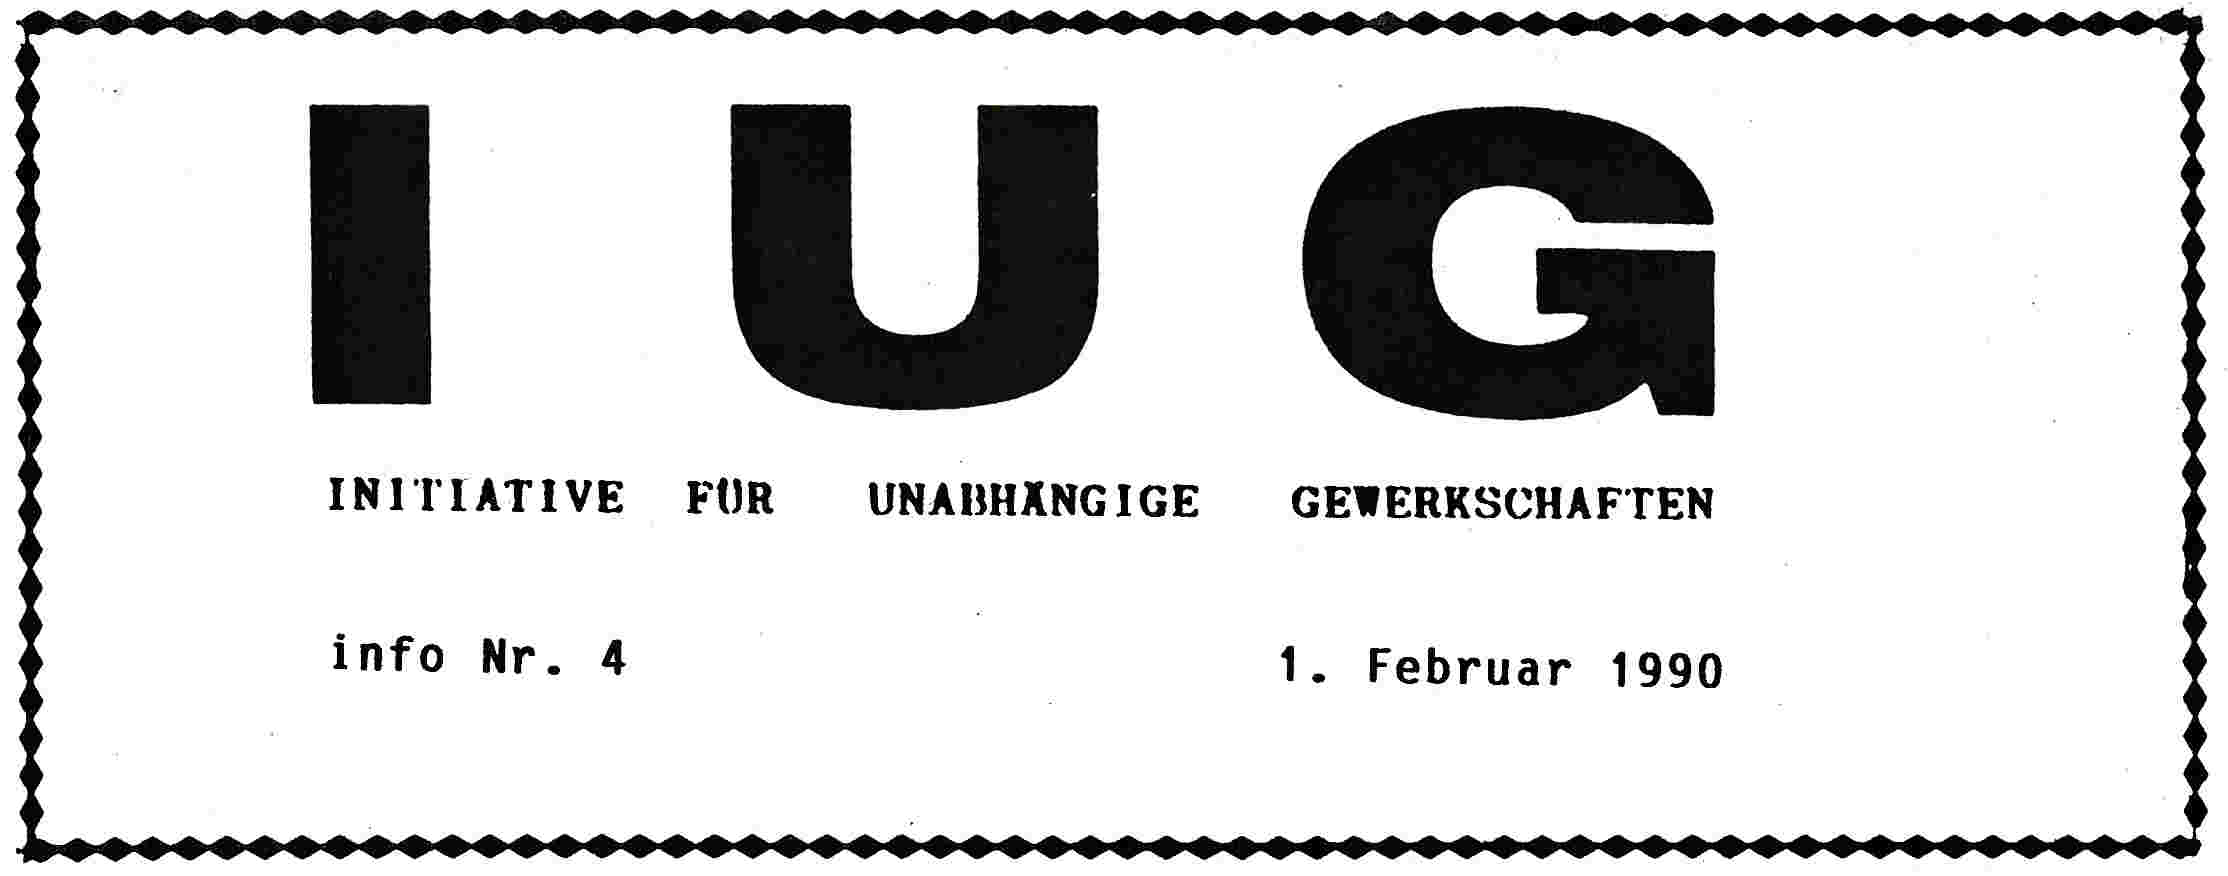 Initiative für Unabhängige Gewerkschaften info nr. 4 vom 1. Februar 1990